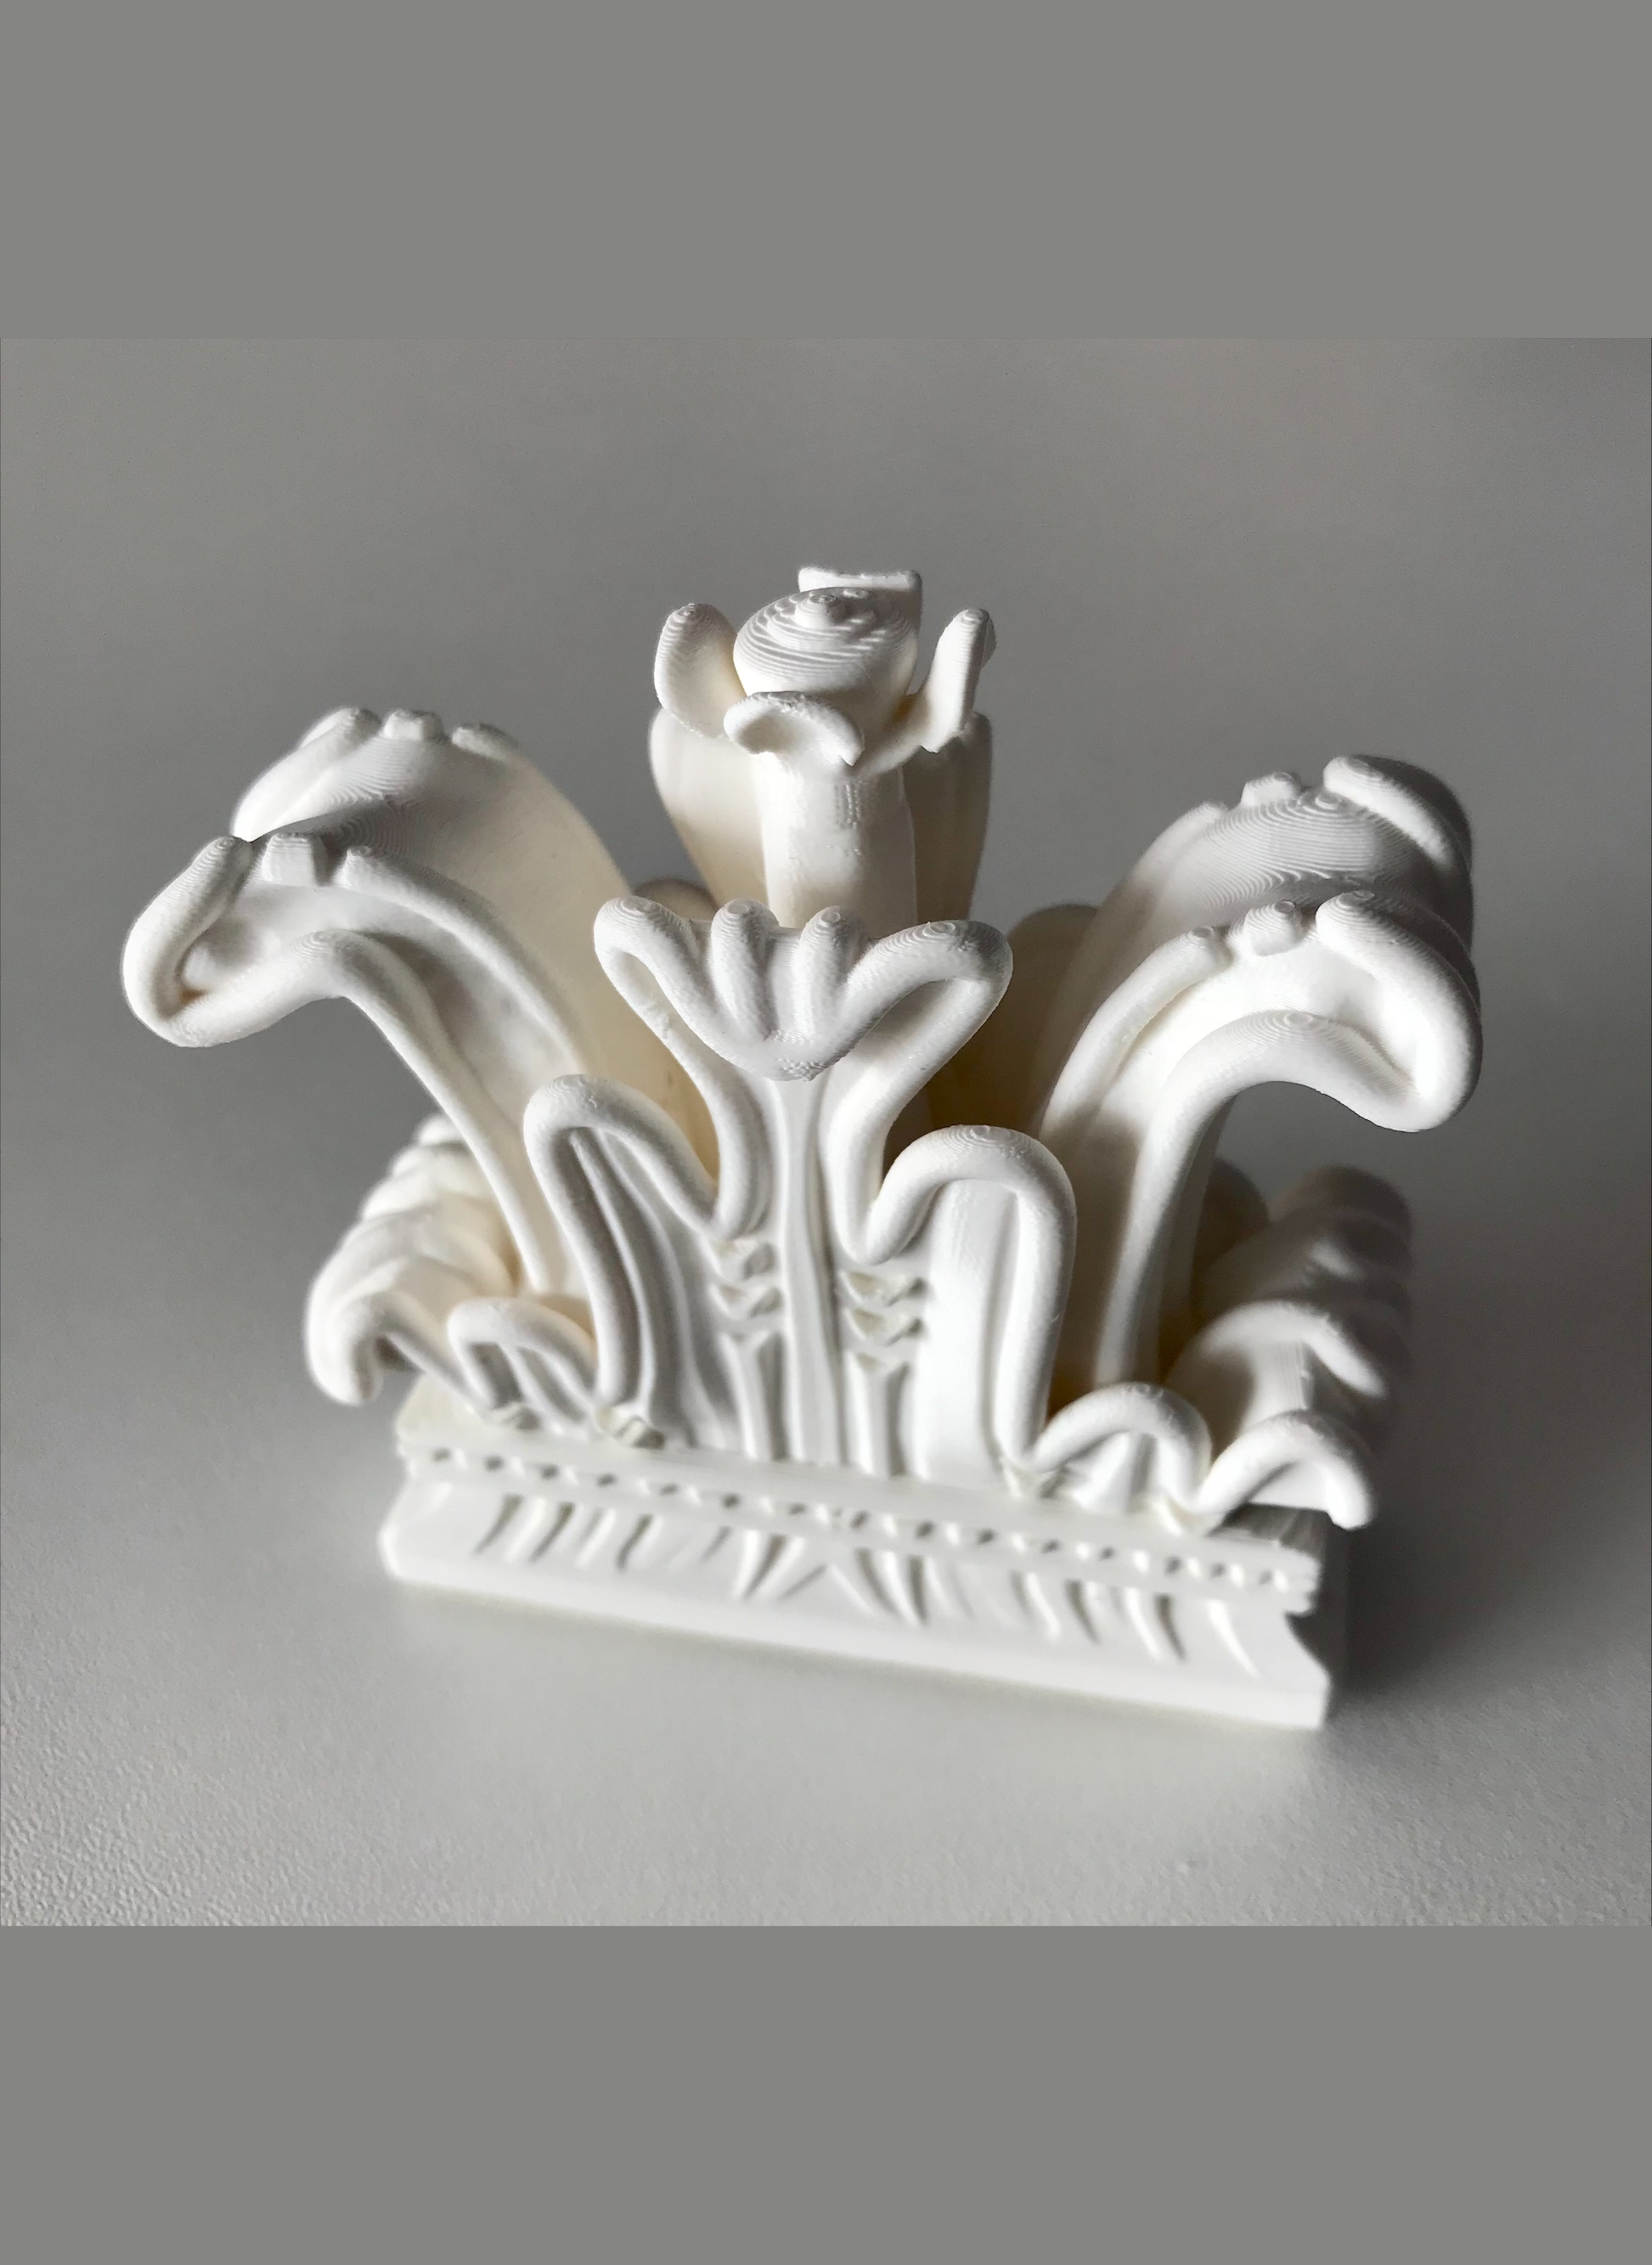 voelbare replica (3D-model) van het schaakstukje van kasteel Helmond